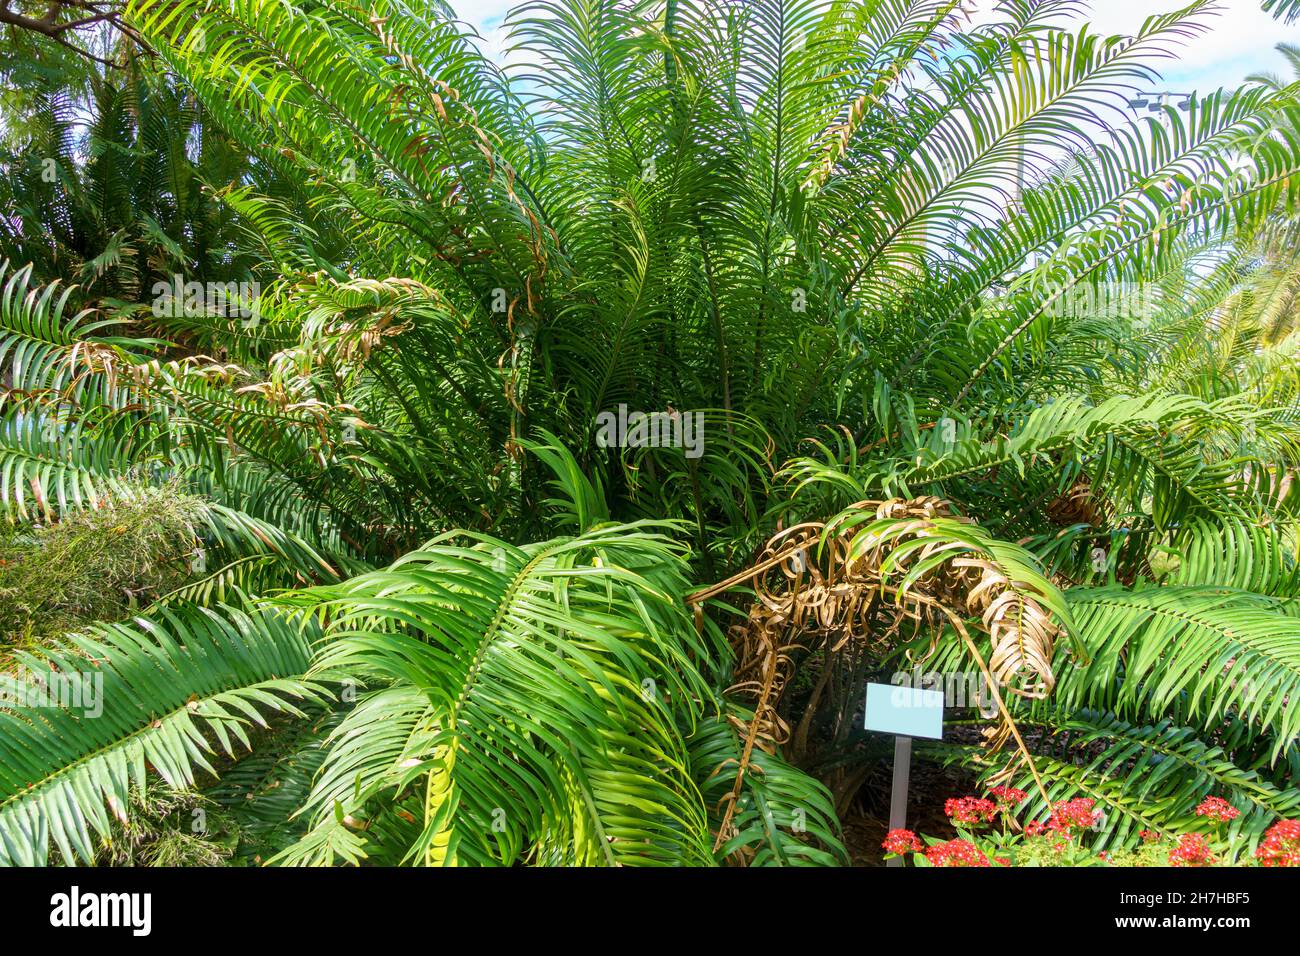 Cycad of species Encephalartos villosus, native to South Africa - Florida, USA Stock Photo